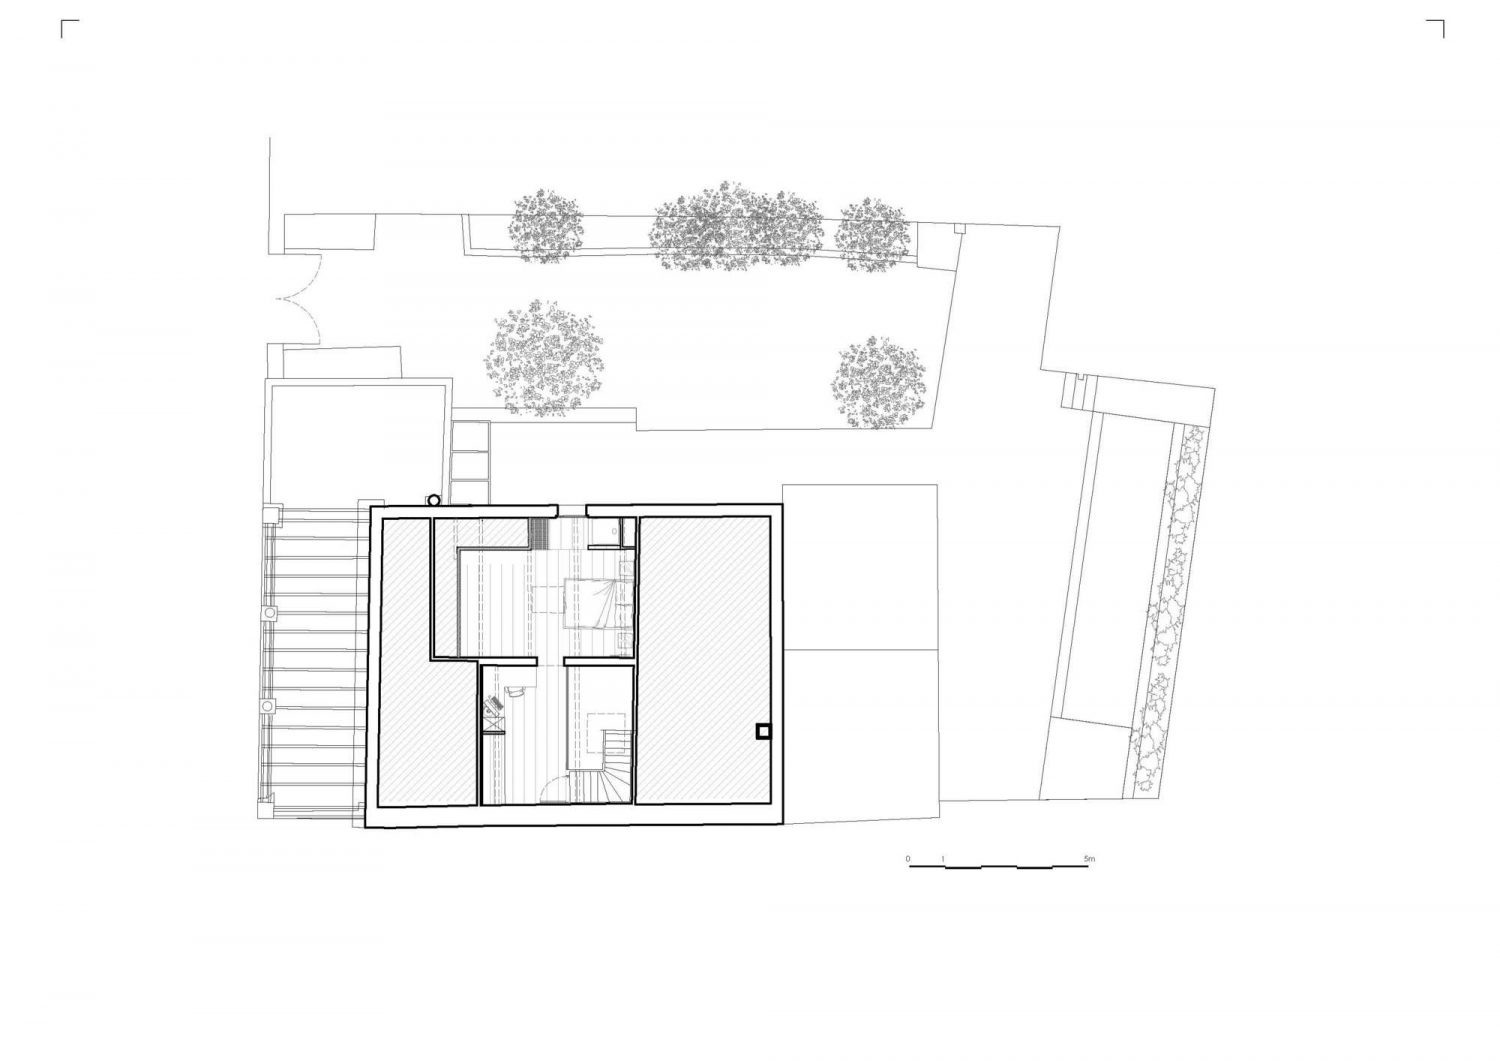 MSR House by Brengues Le Pavec architectes